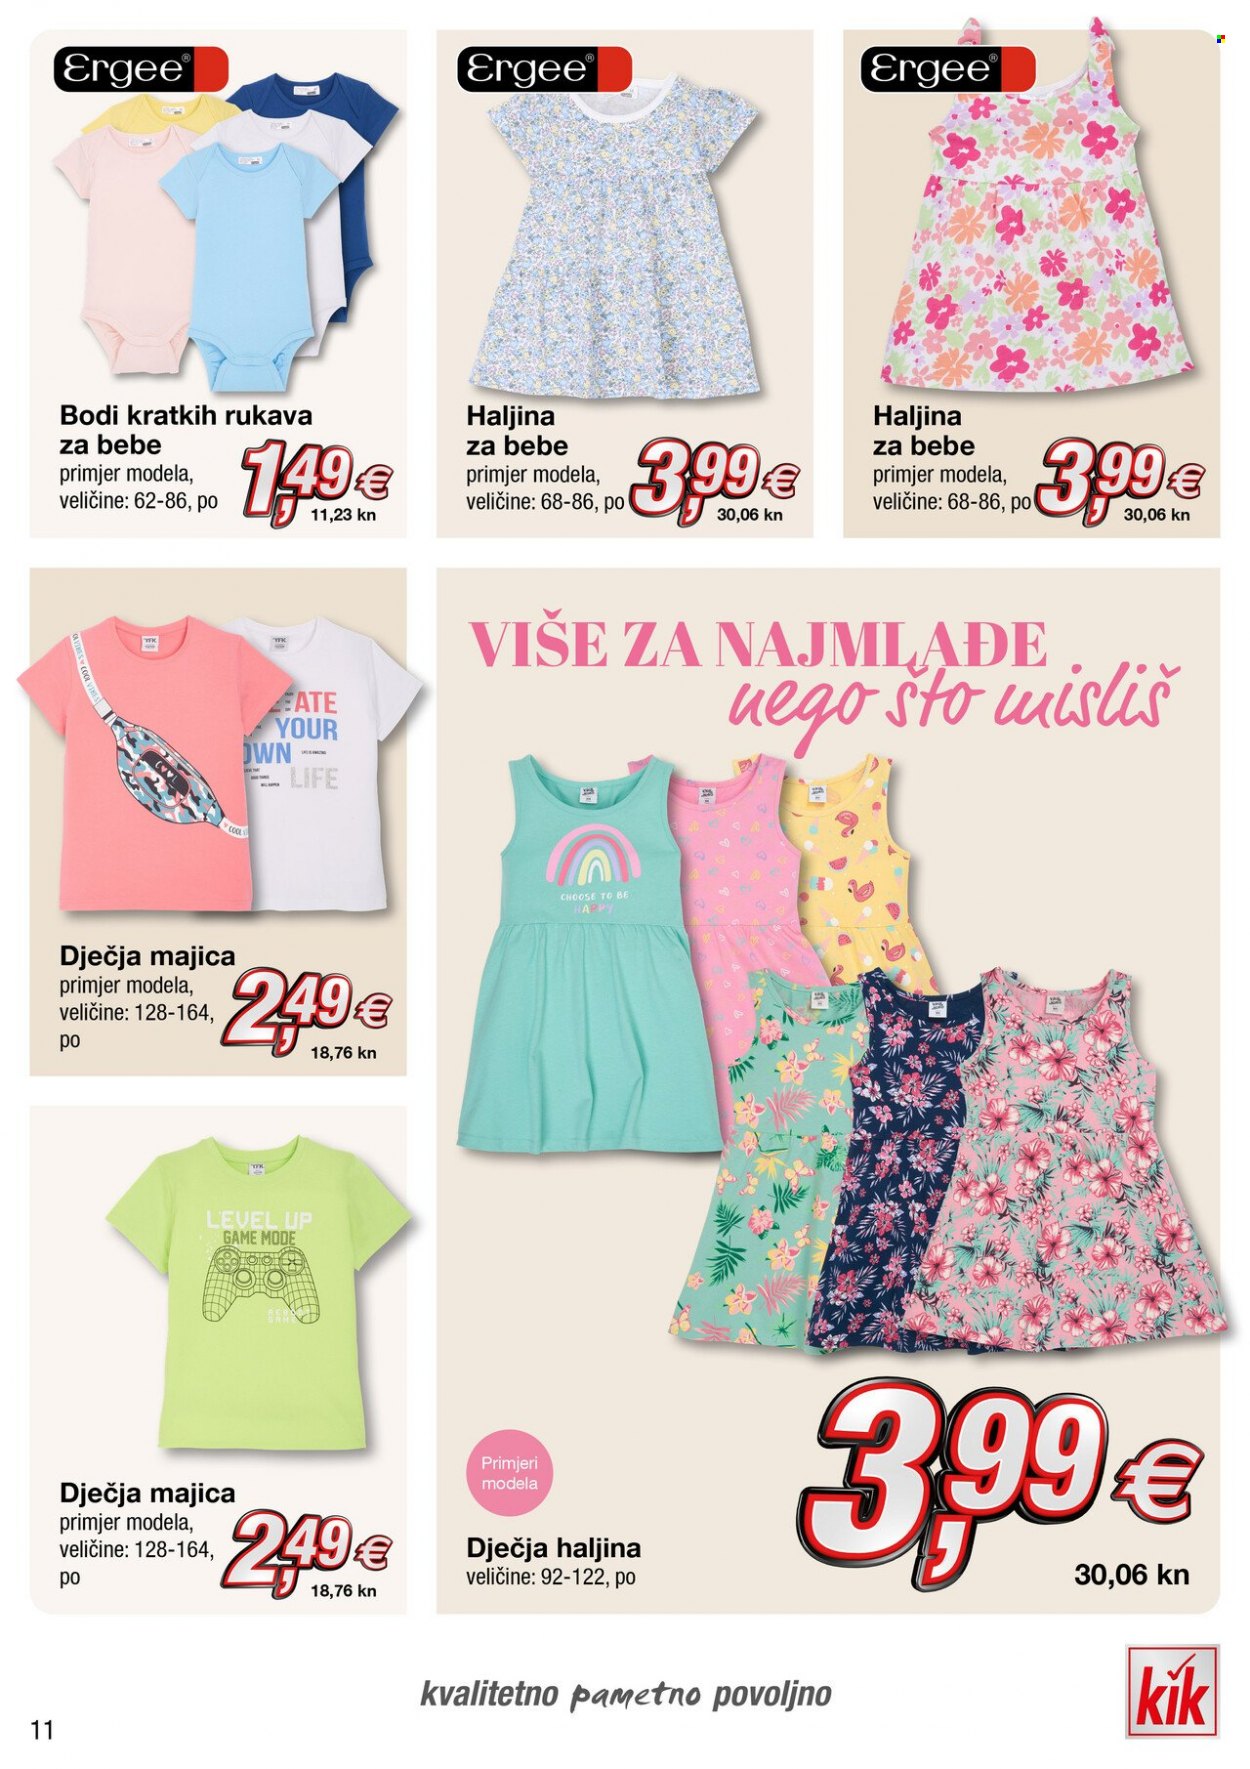 thumbnail - Kik katalog - Sniženi proizvodi - haljina, haljina za bebe, majica, dječja majica. Stranica 11.